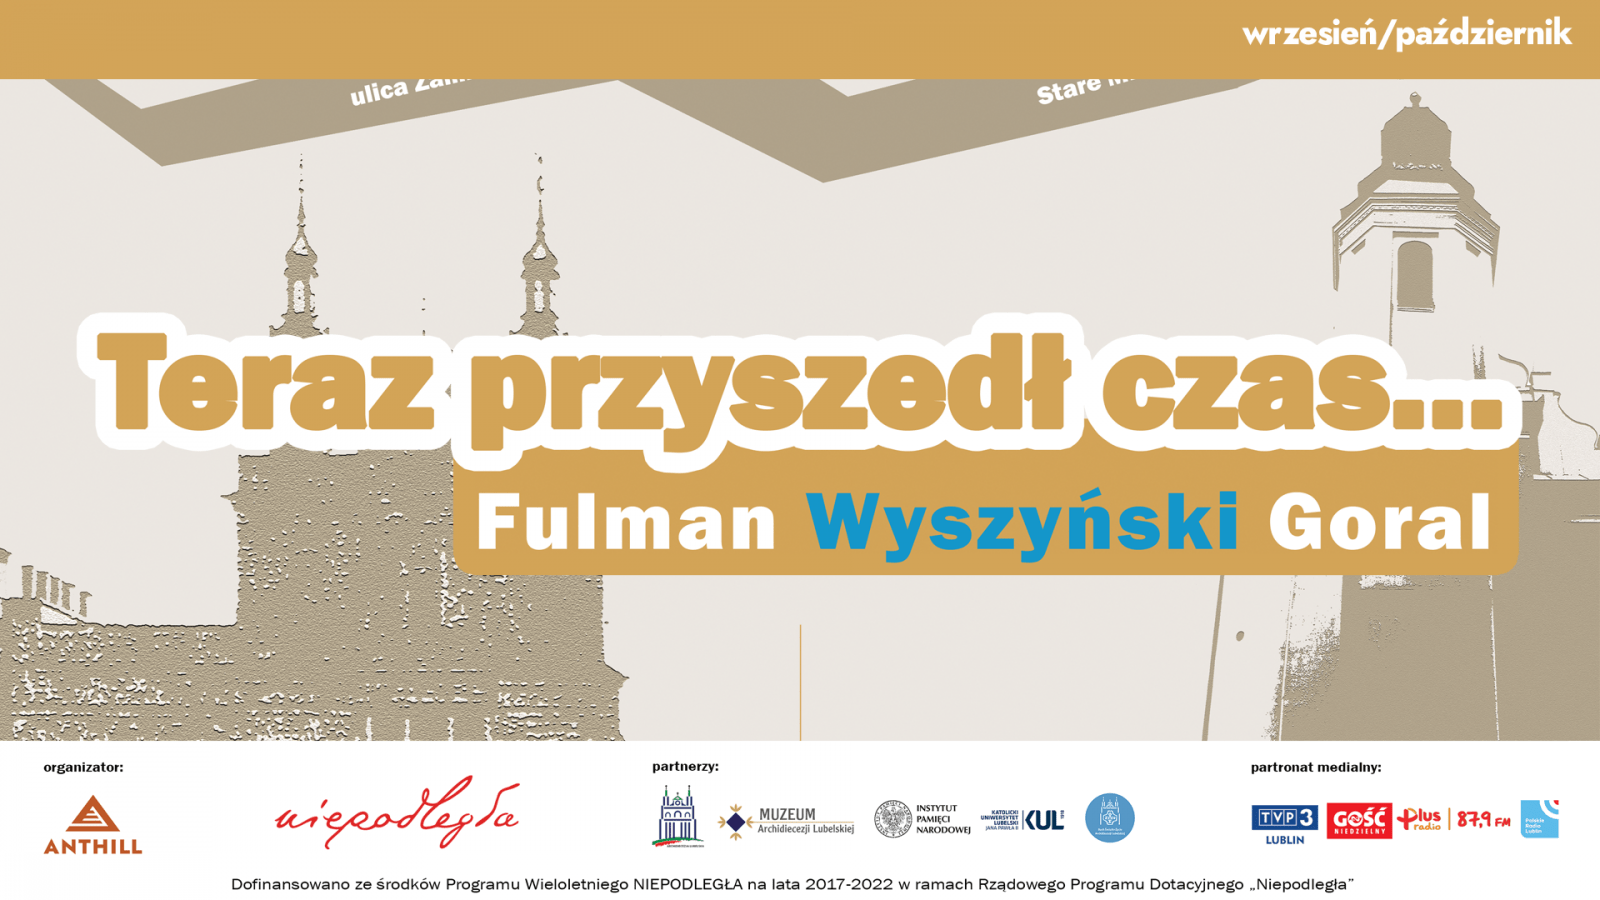 Fulman, Wyszyński, G